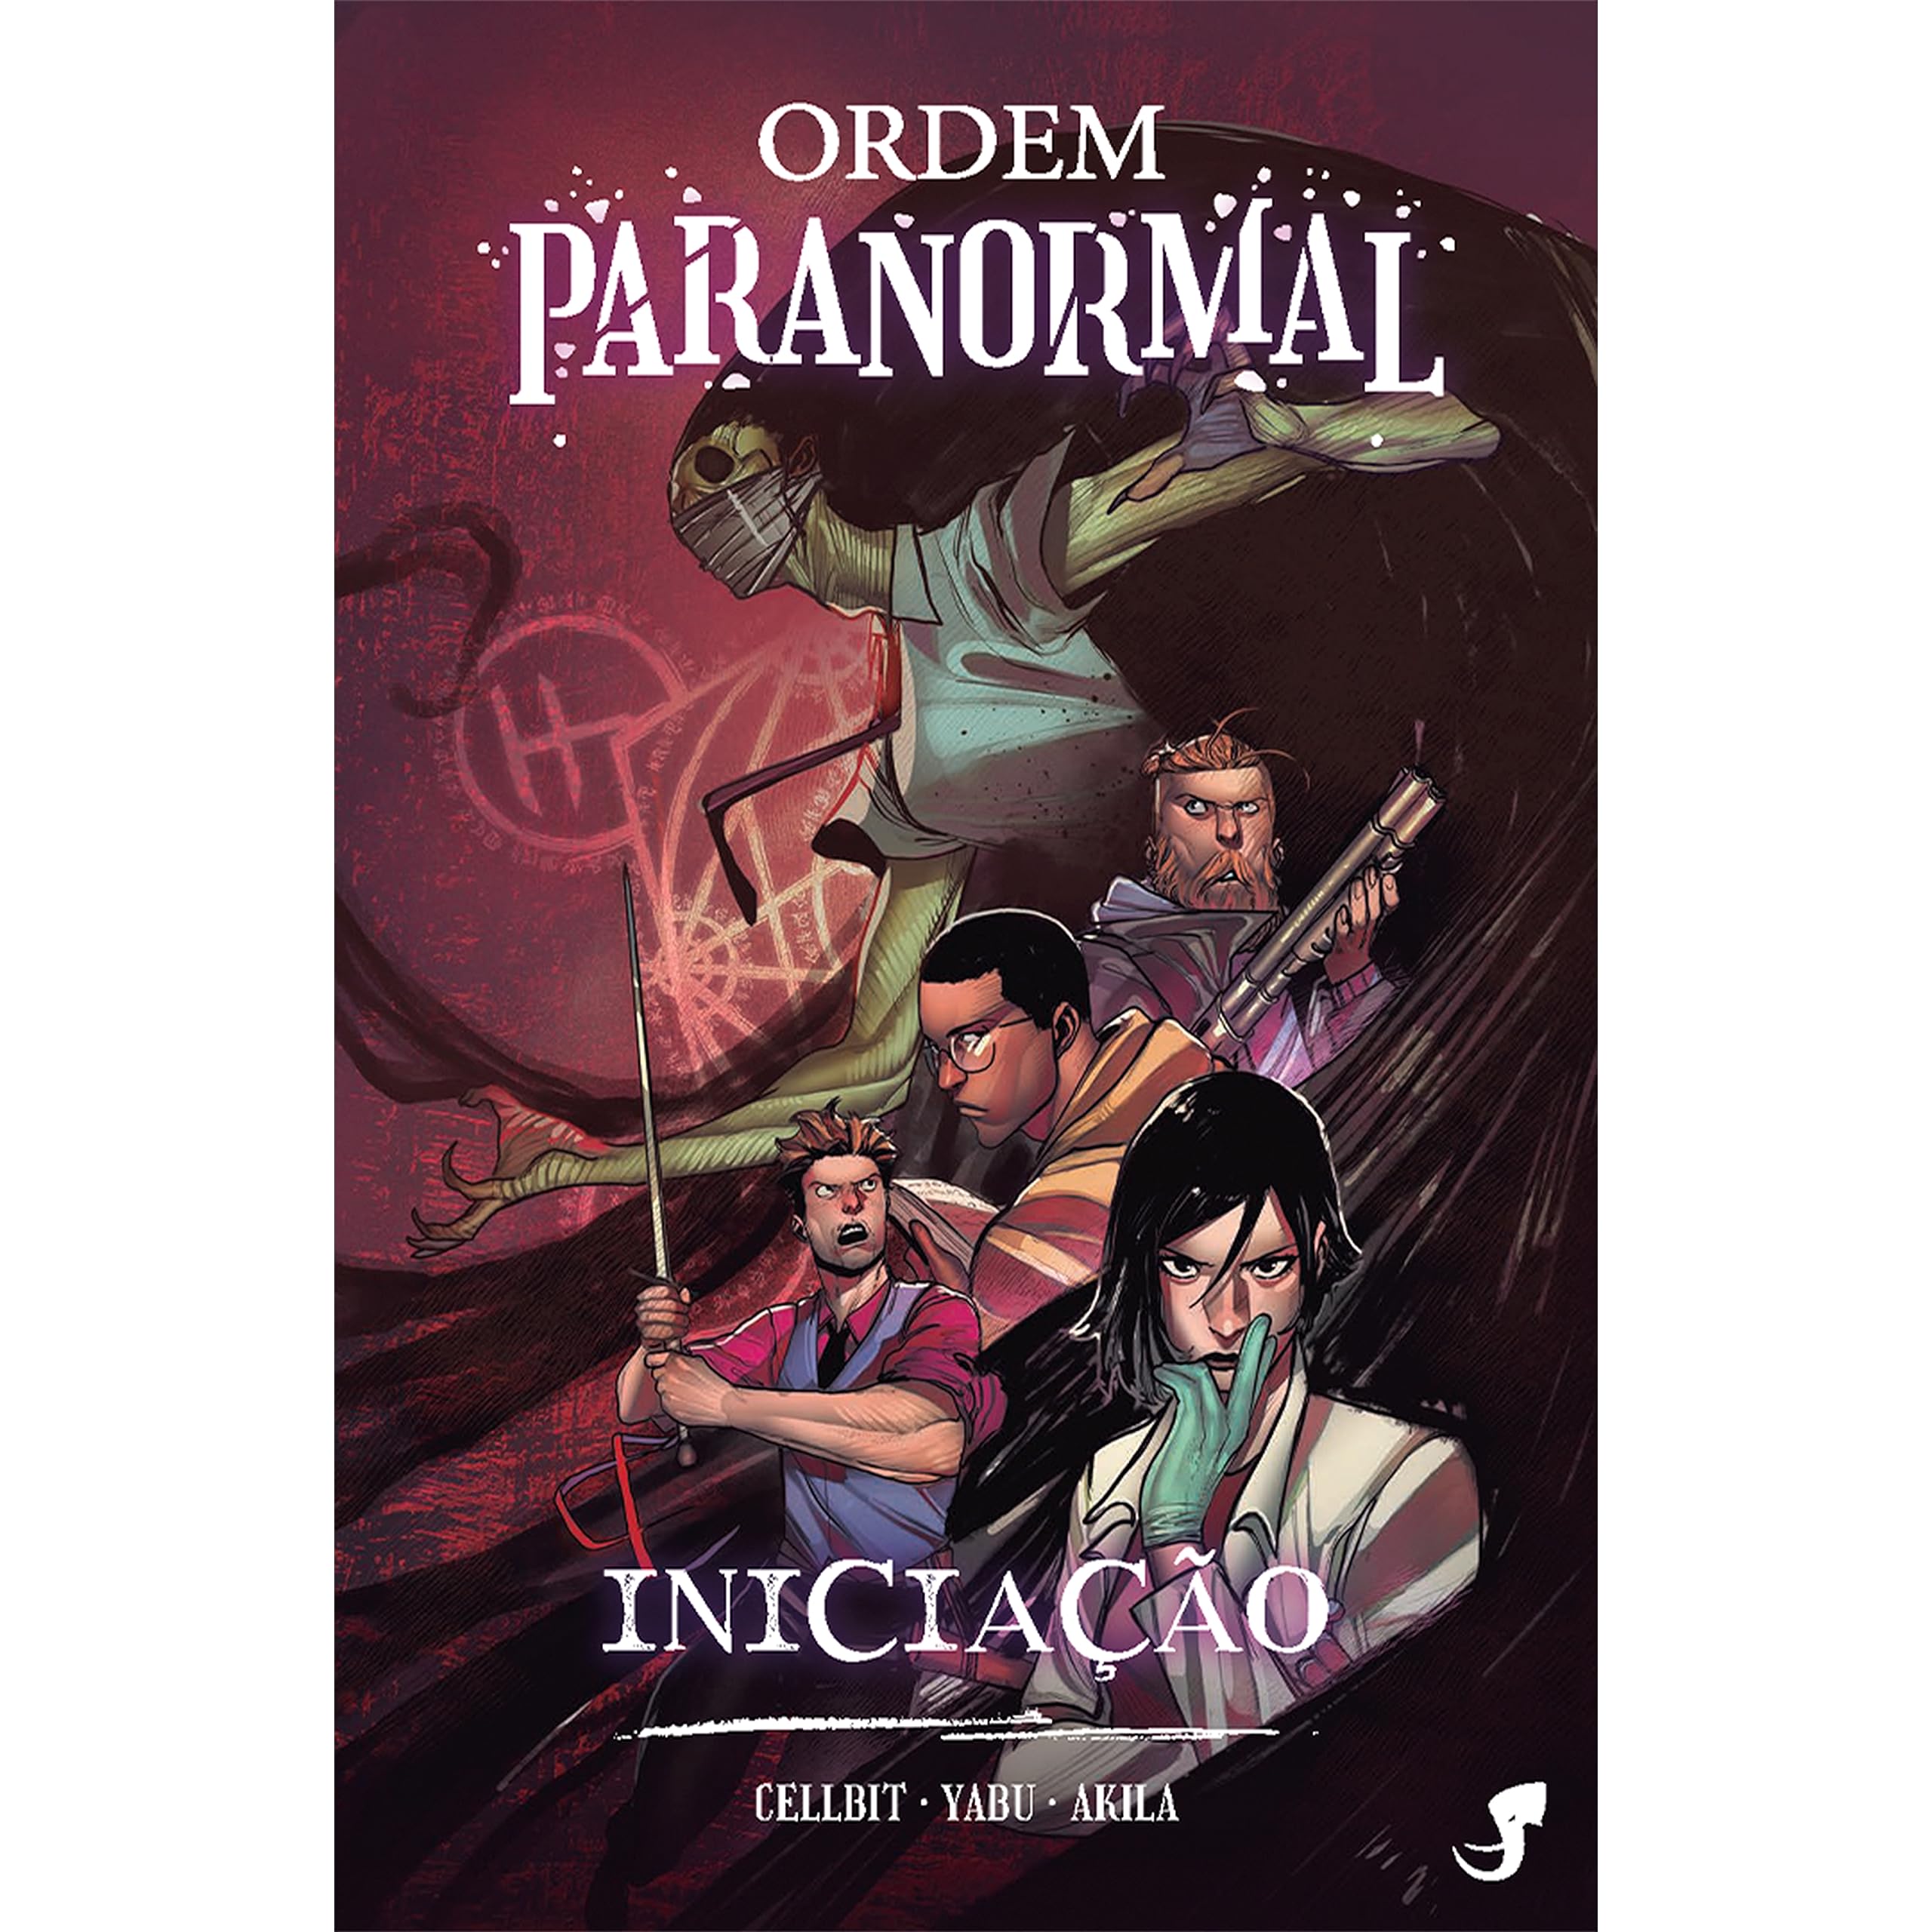 Ordem Paranormal Vol. 1: Iniciação (Portuguese Edition)